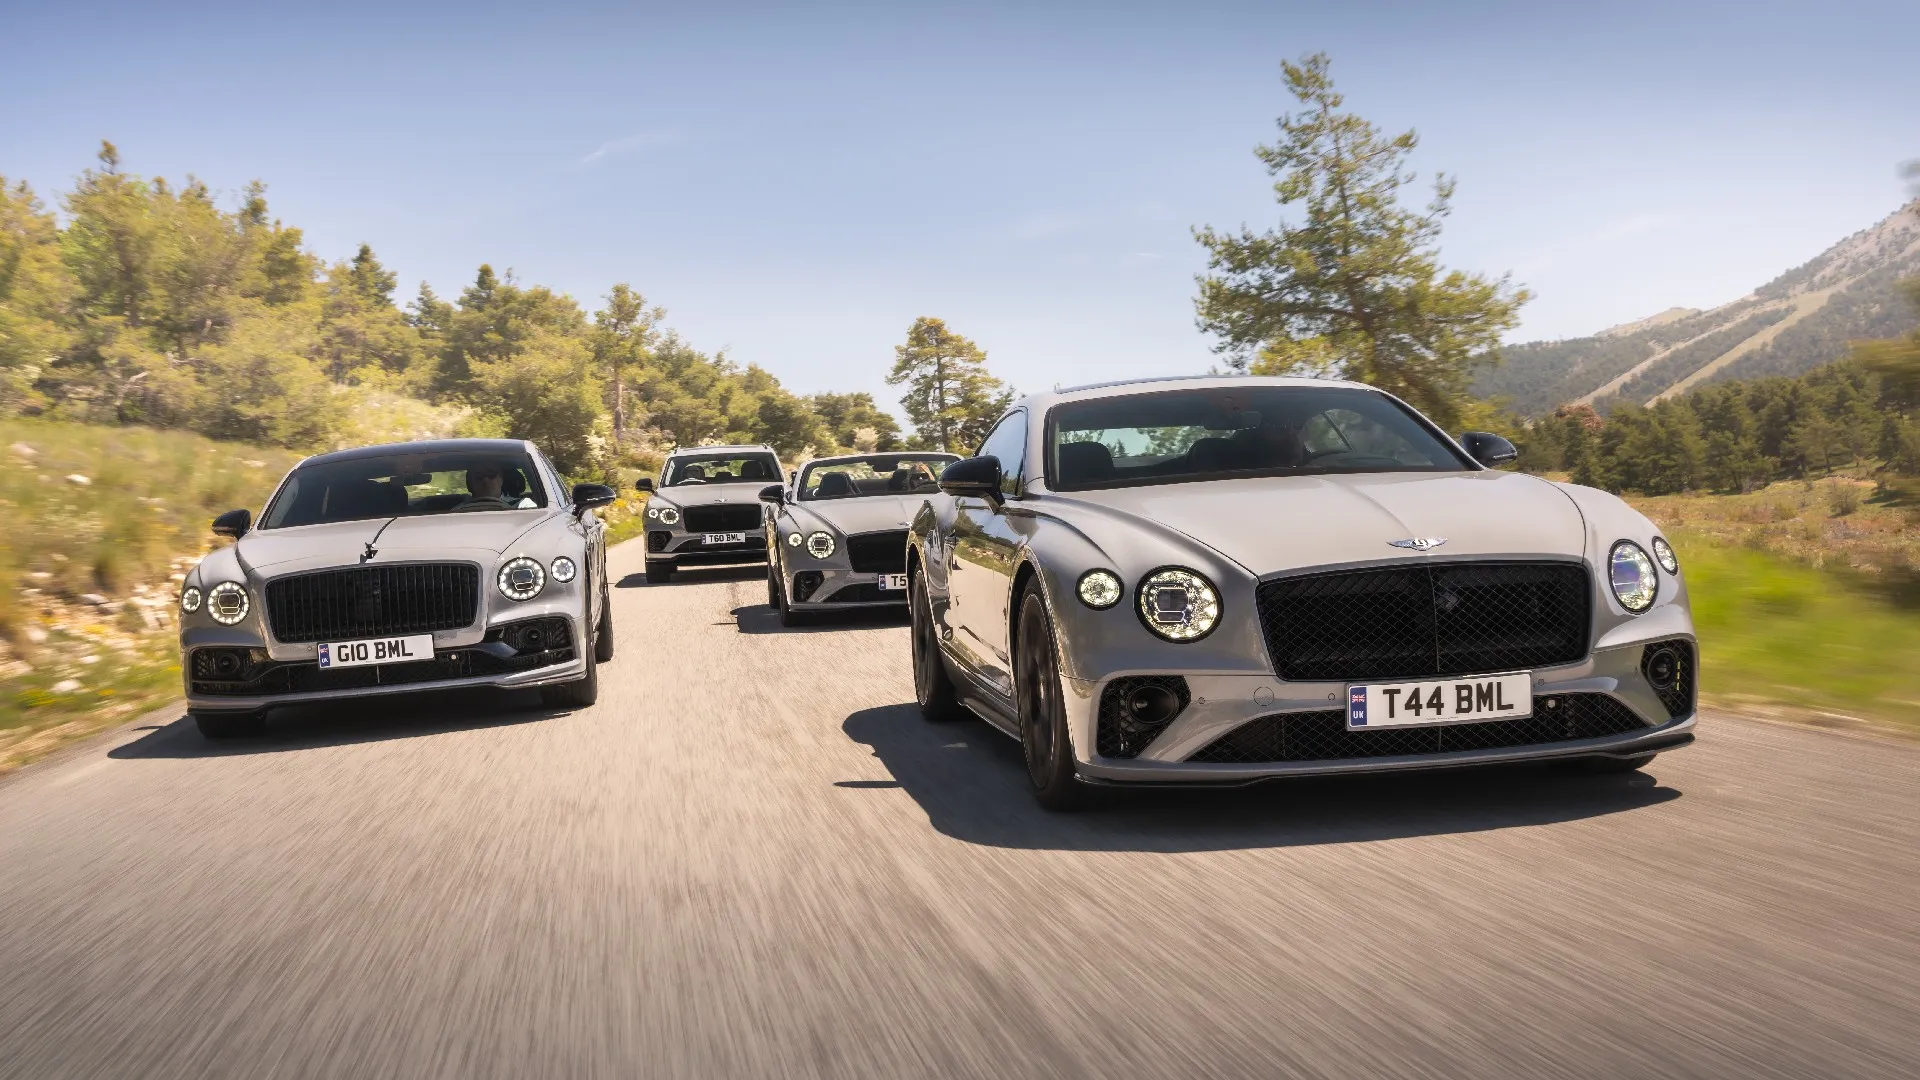 Los Bentley Flying Spur S y los Continental GT y GTC S, se dejarán ver en el Festival de la Velocidad de Goodwood